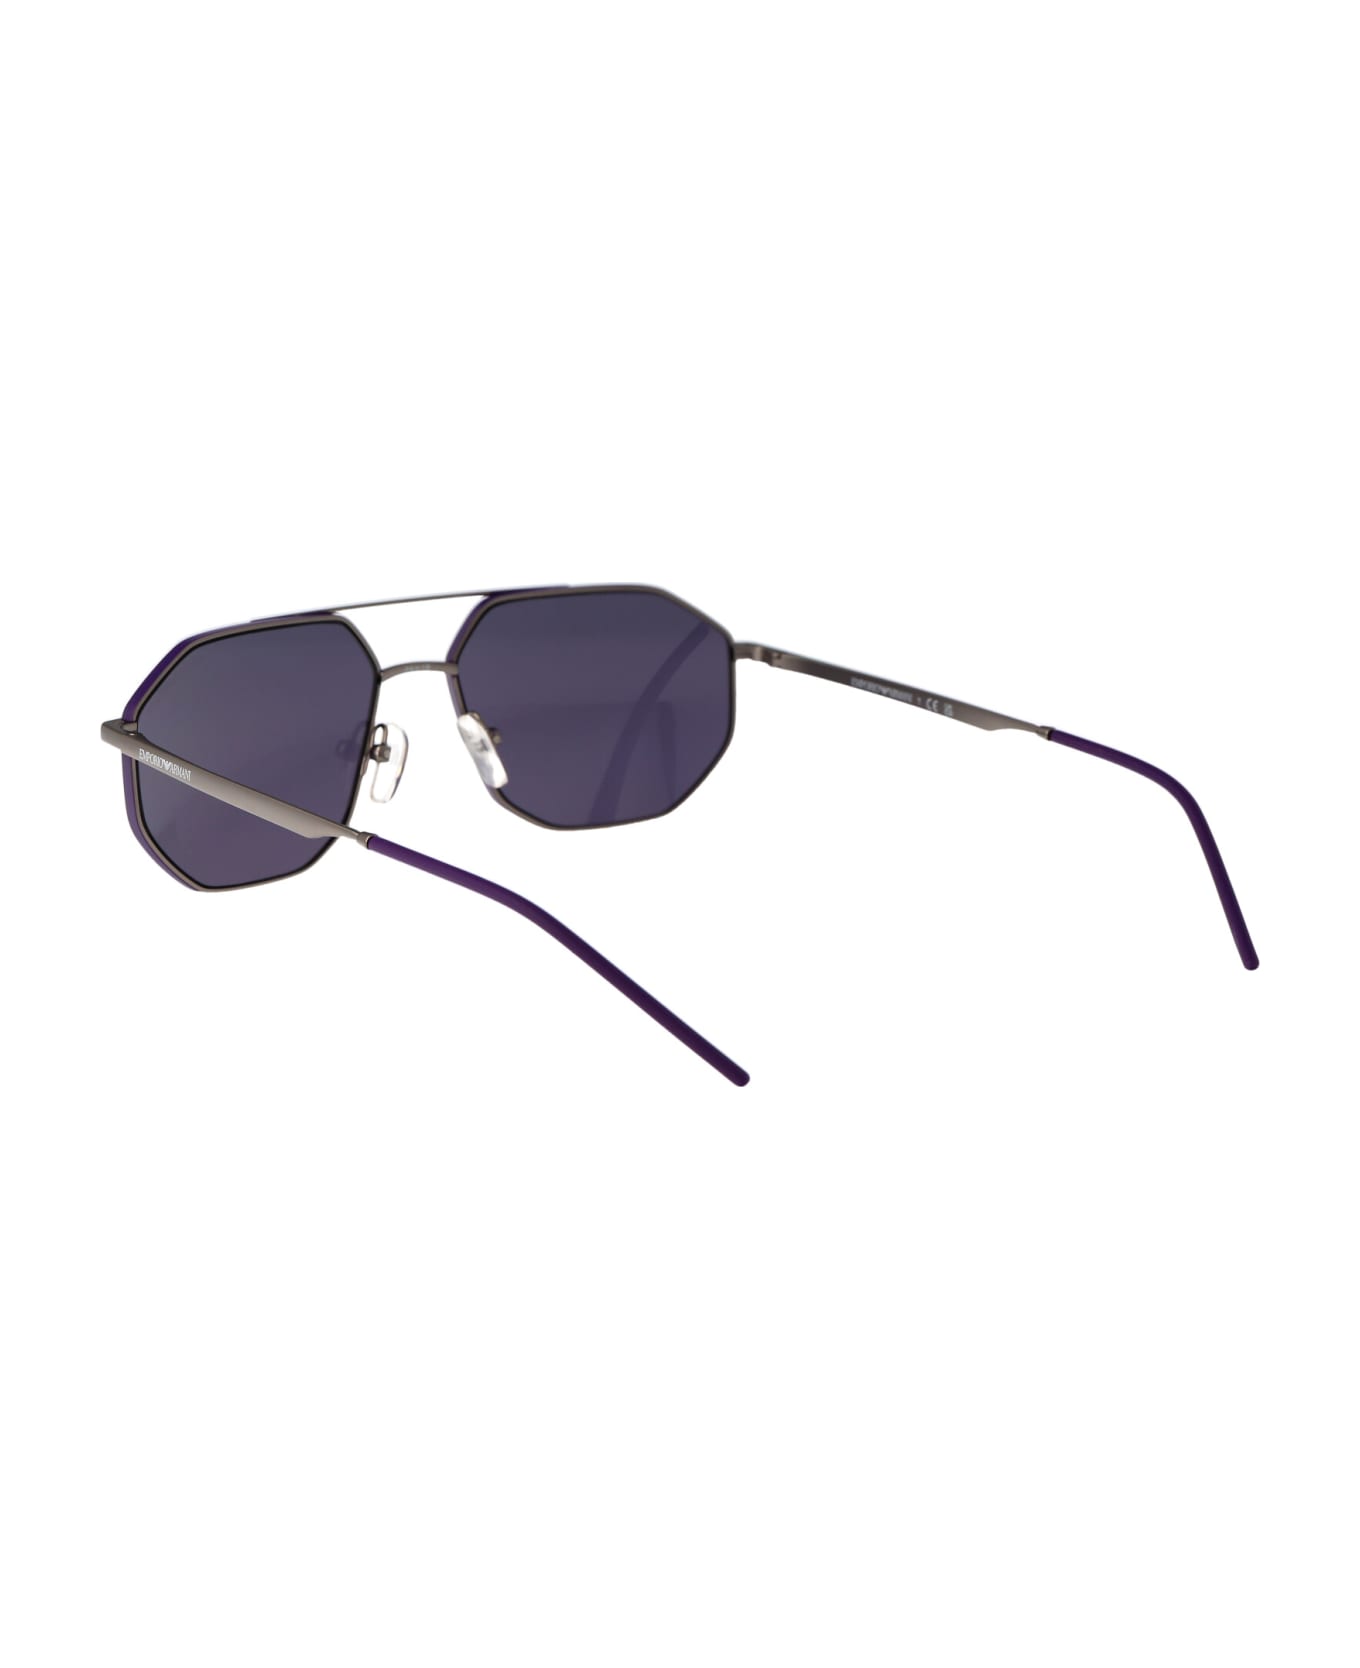 Emporio Armani 0ea2147 Sunglasses - 30031A Matte Gunmetal